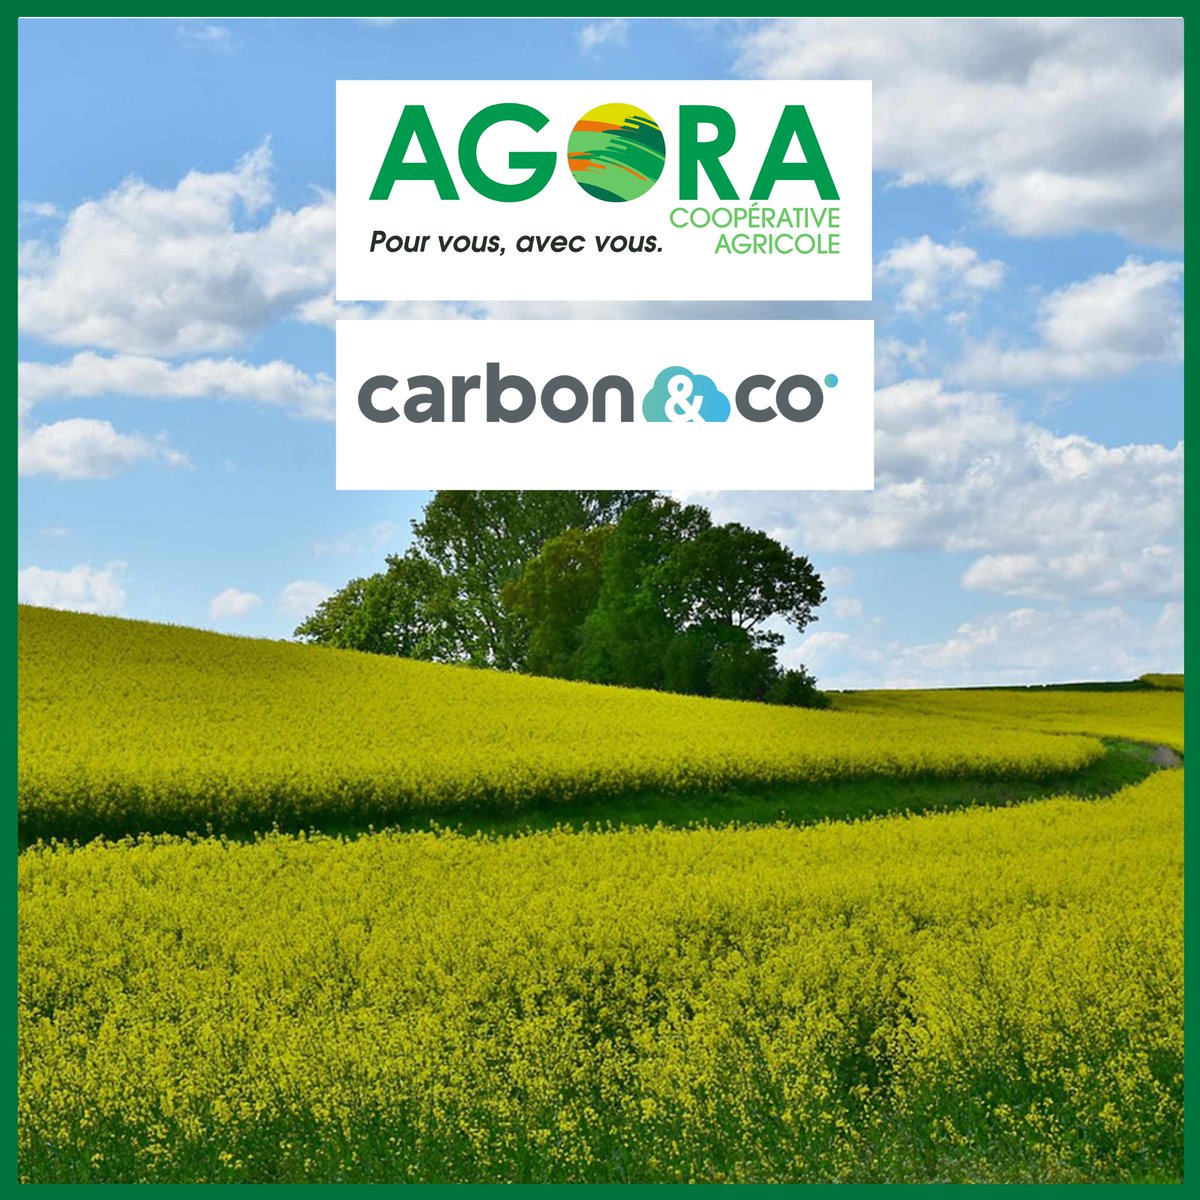 Agroécologie & Partenariats | Nous sommes ravis d'annoncer notre partenariat avec Carbon&co pour la labellisation d’un projet label bas-carbone et le financement de crédits #carbone, une étape vers une agriculture plus durable. 🔍🌾Plus d'infos ici : coopagora.fr/actualites/ago…